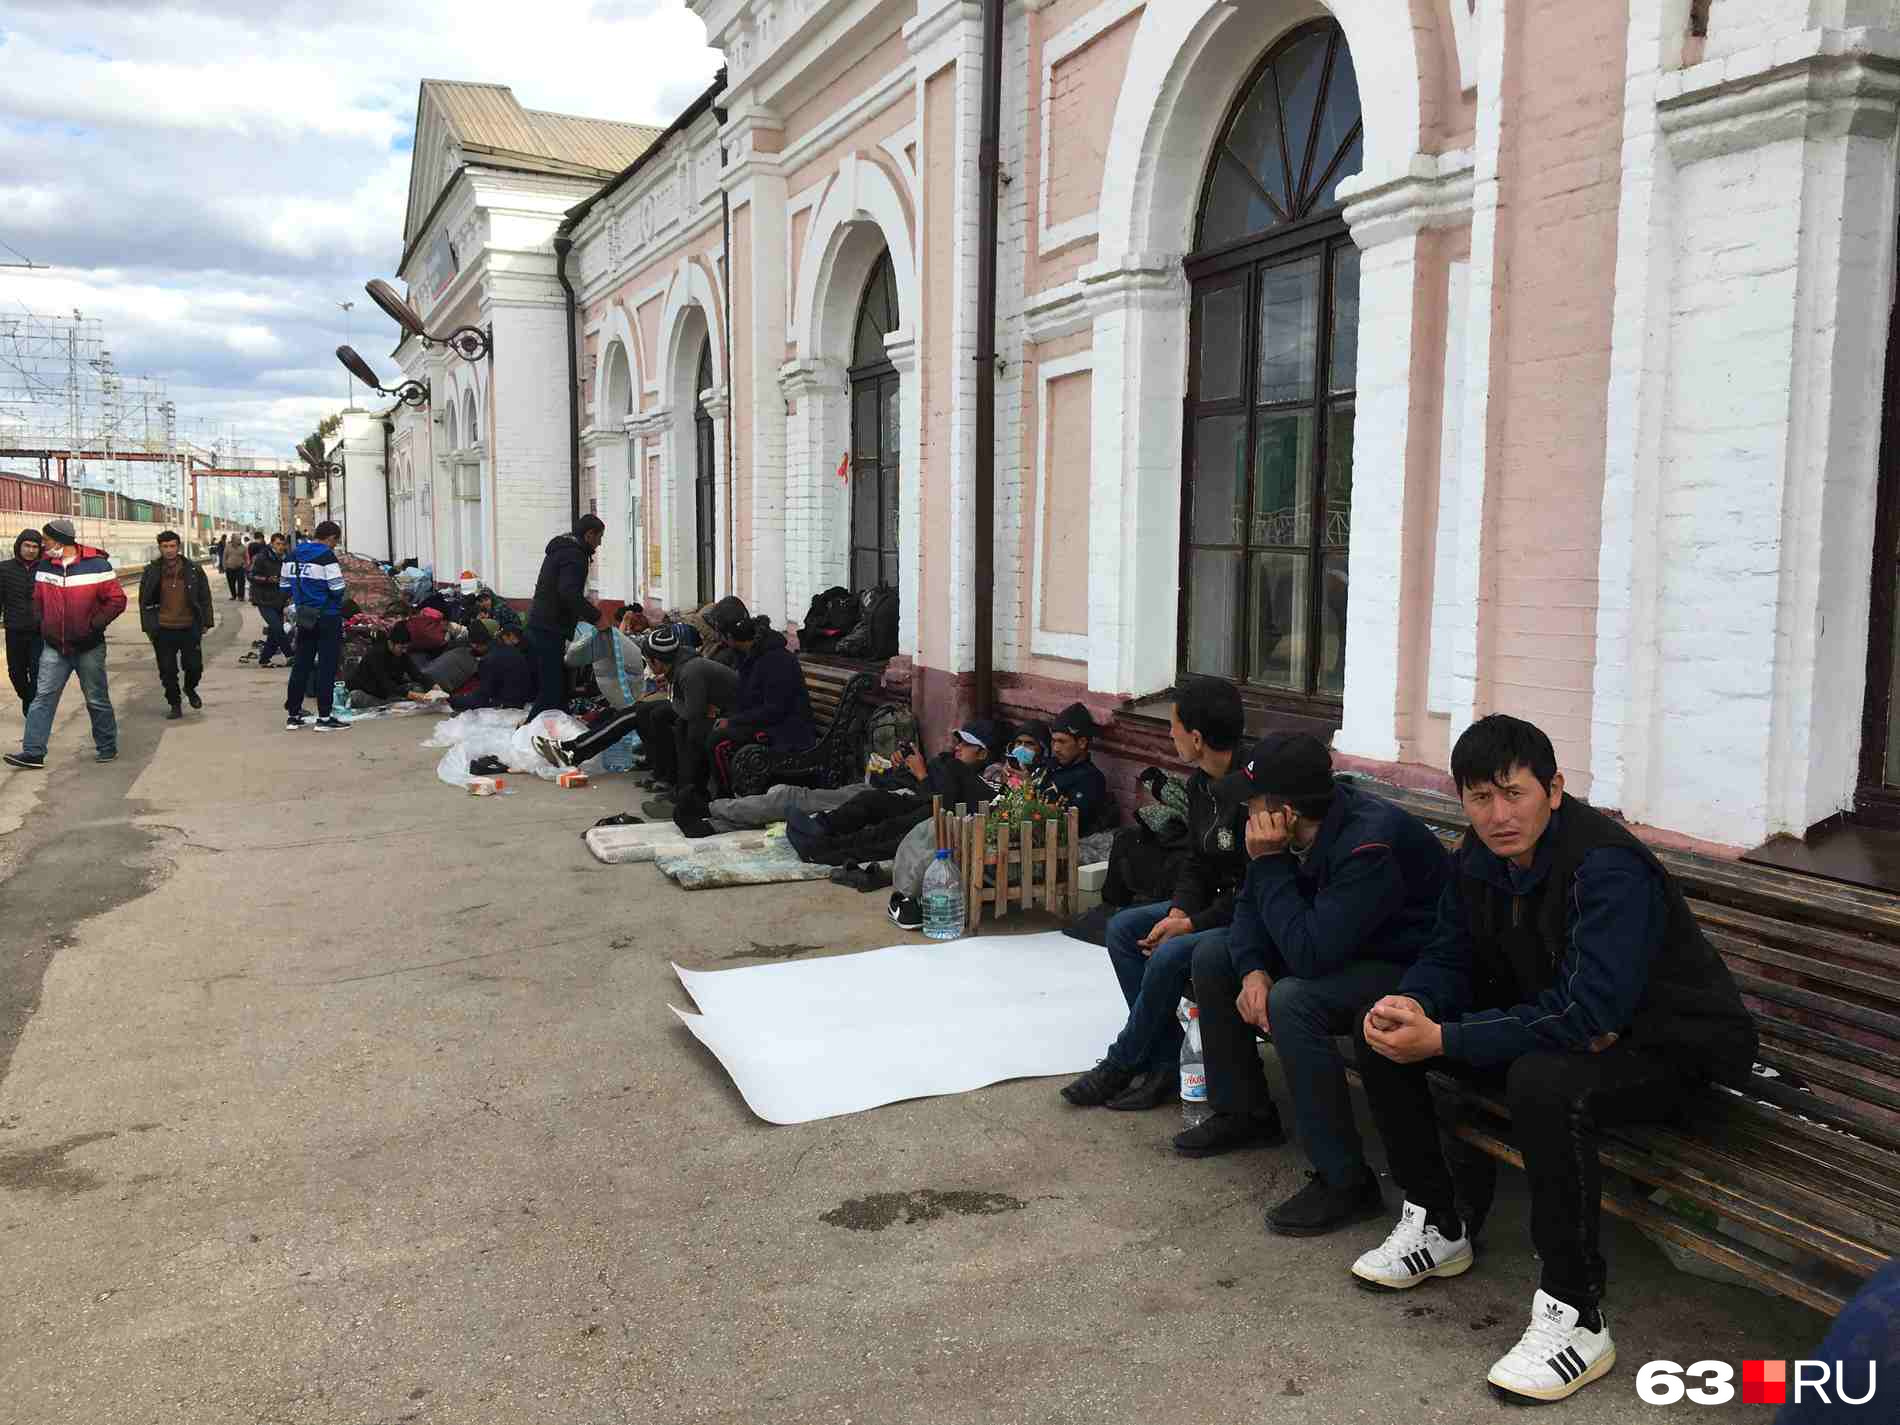 Таджики покидают страну. Мигранты в России. Мигранты на вокзале. Мигранты Россия вокзал. Мигранты в Москве.